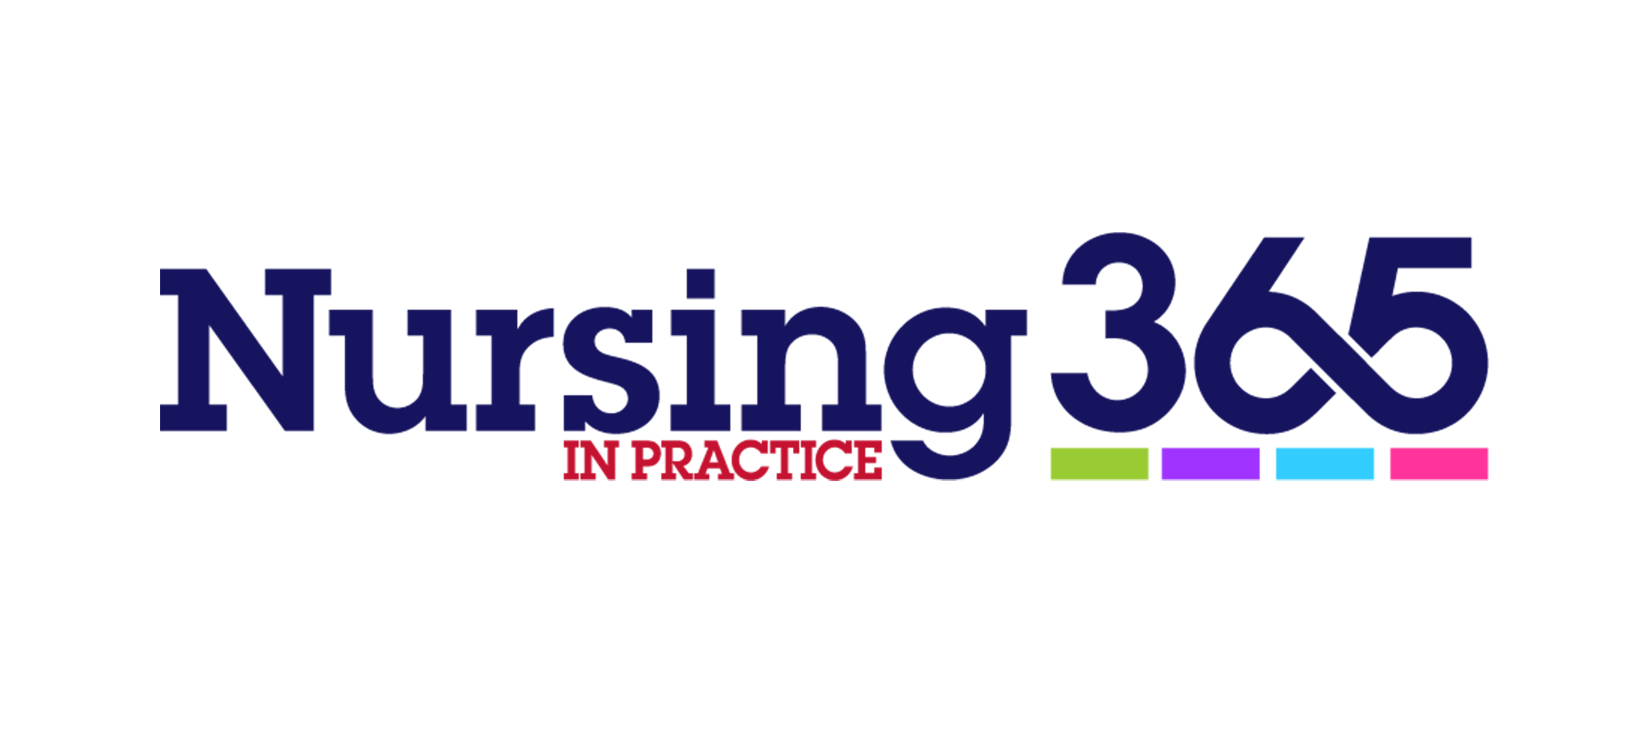 Nursing in Practice 365 launches